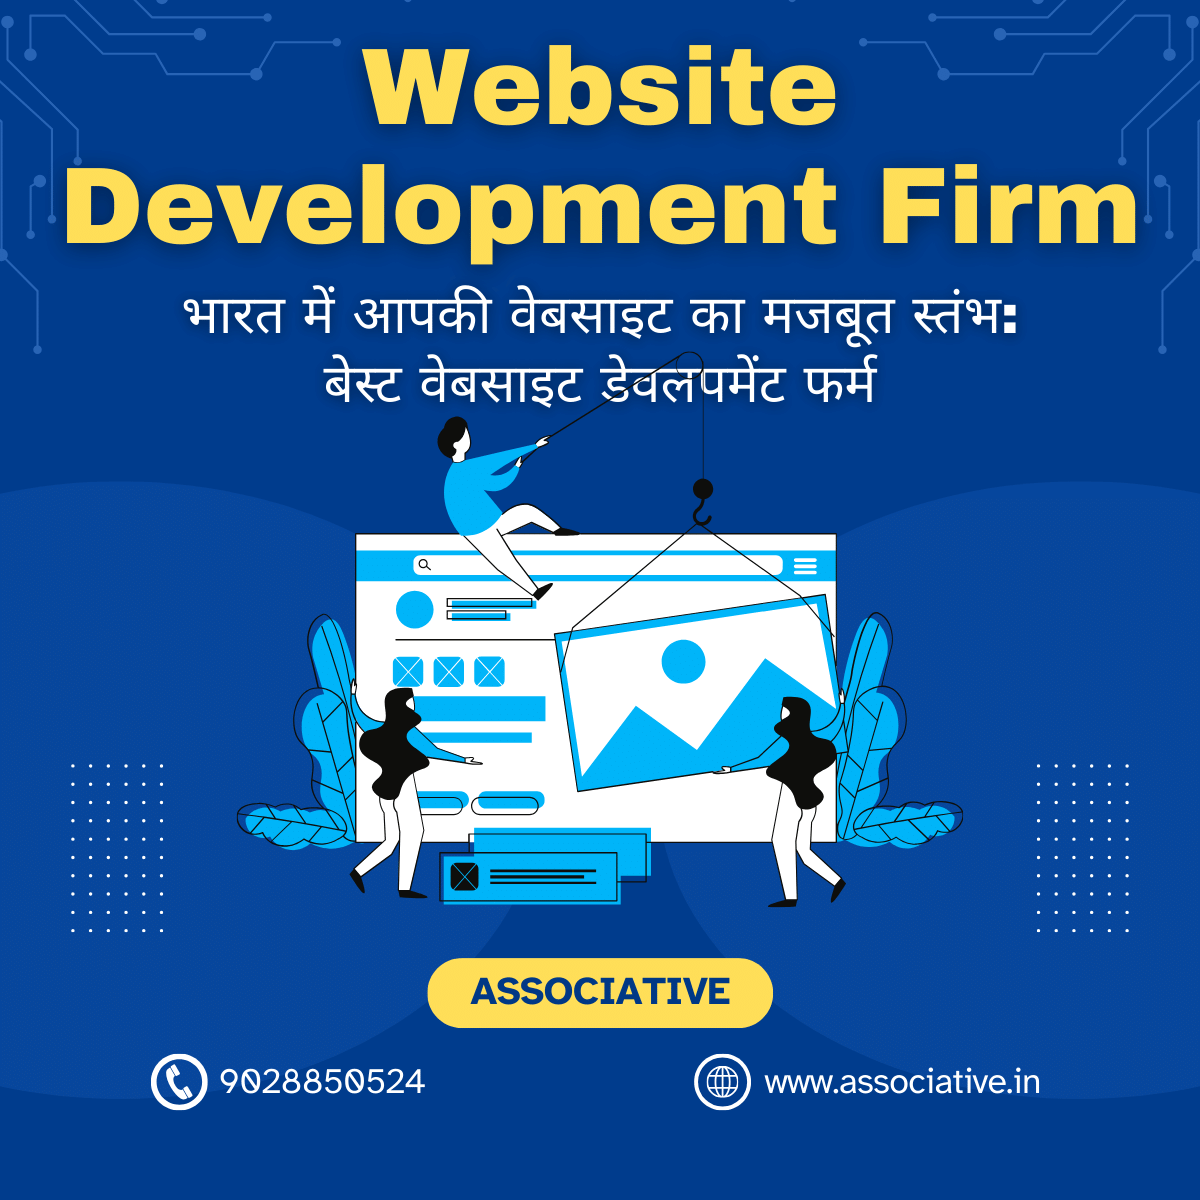 Website Development Firm भारत में आपकी वेबसाइट का मजबूत स्तंभ: बेस्ट वेबसाइट डेवलपमेंट फर्म